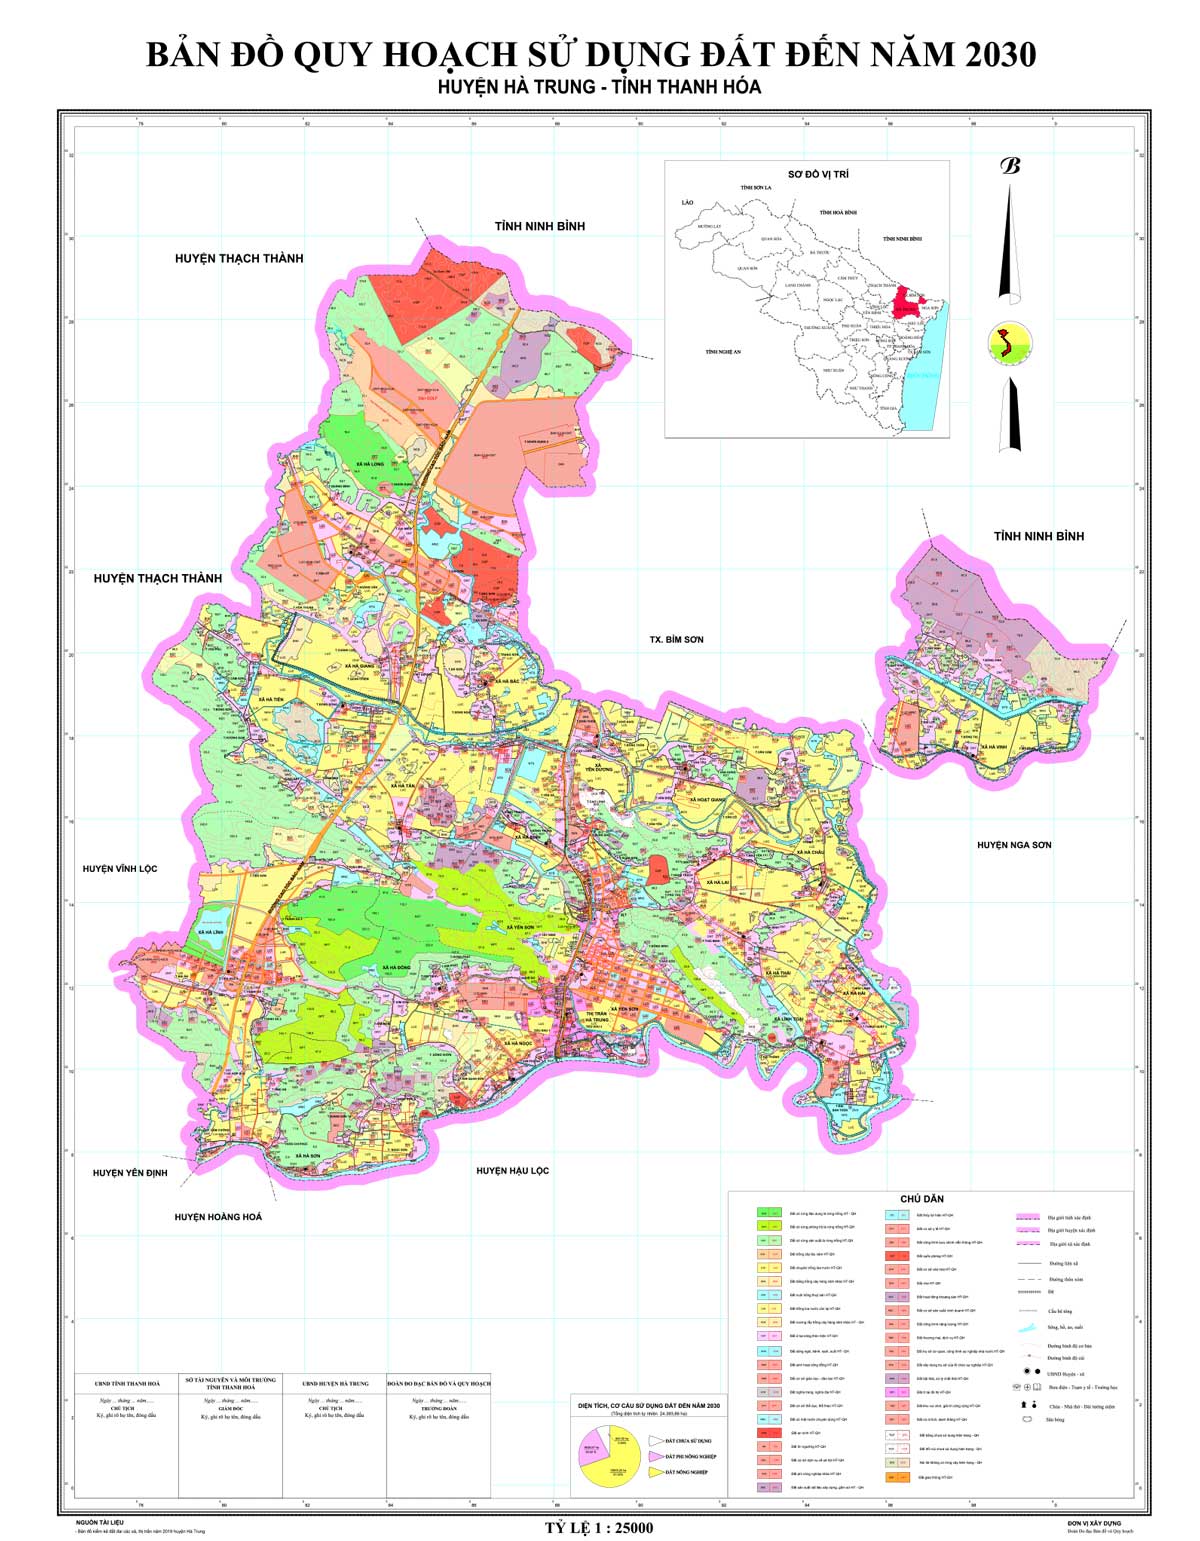 Bản đồ QHSDĐ huyện Hà Trung đến năm 2030